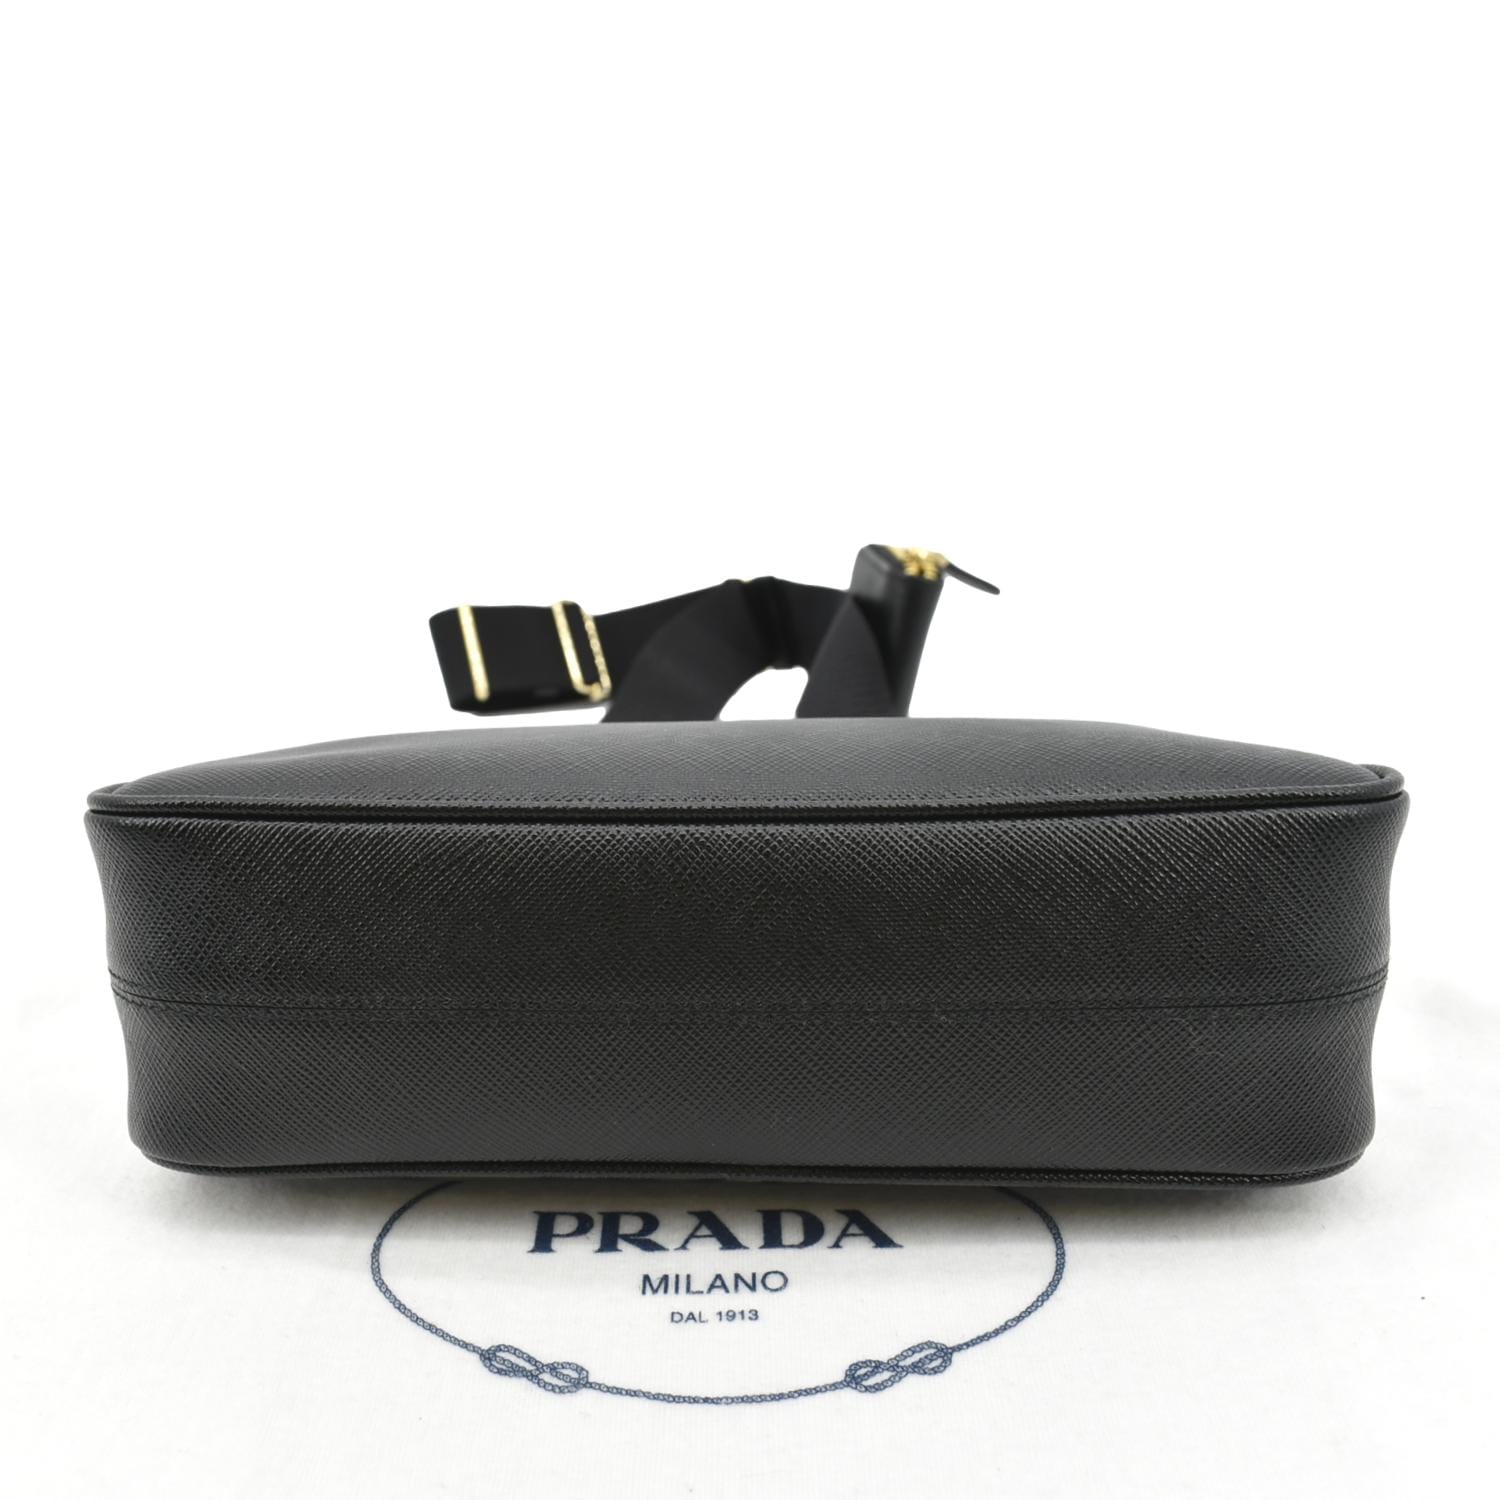 Black Prada Re-Edition 2005 Saffiano leather bag, Prada